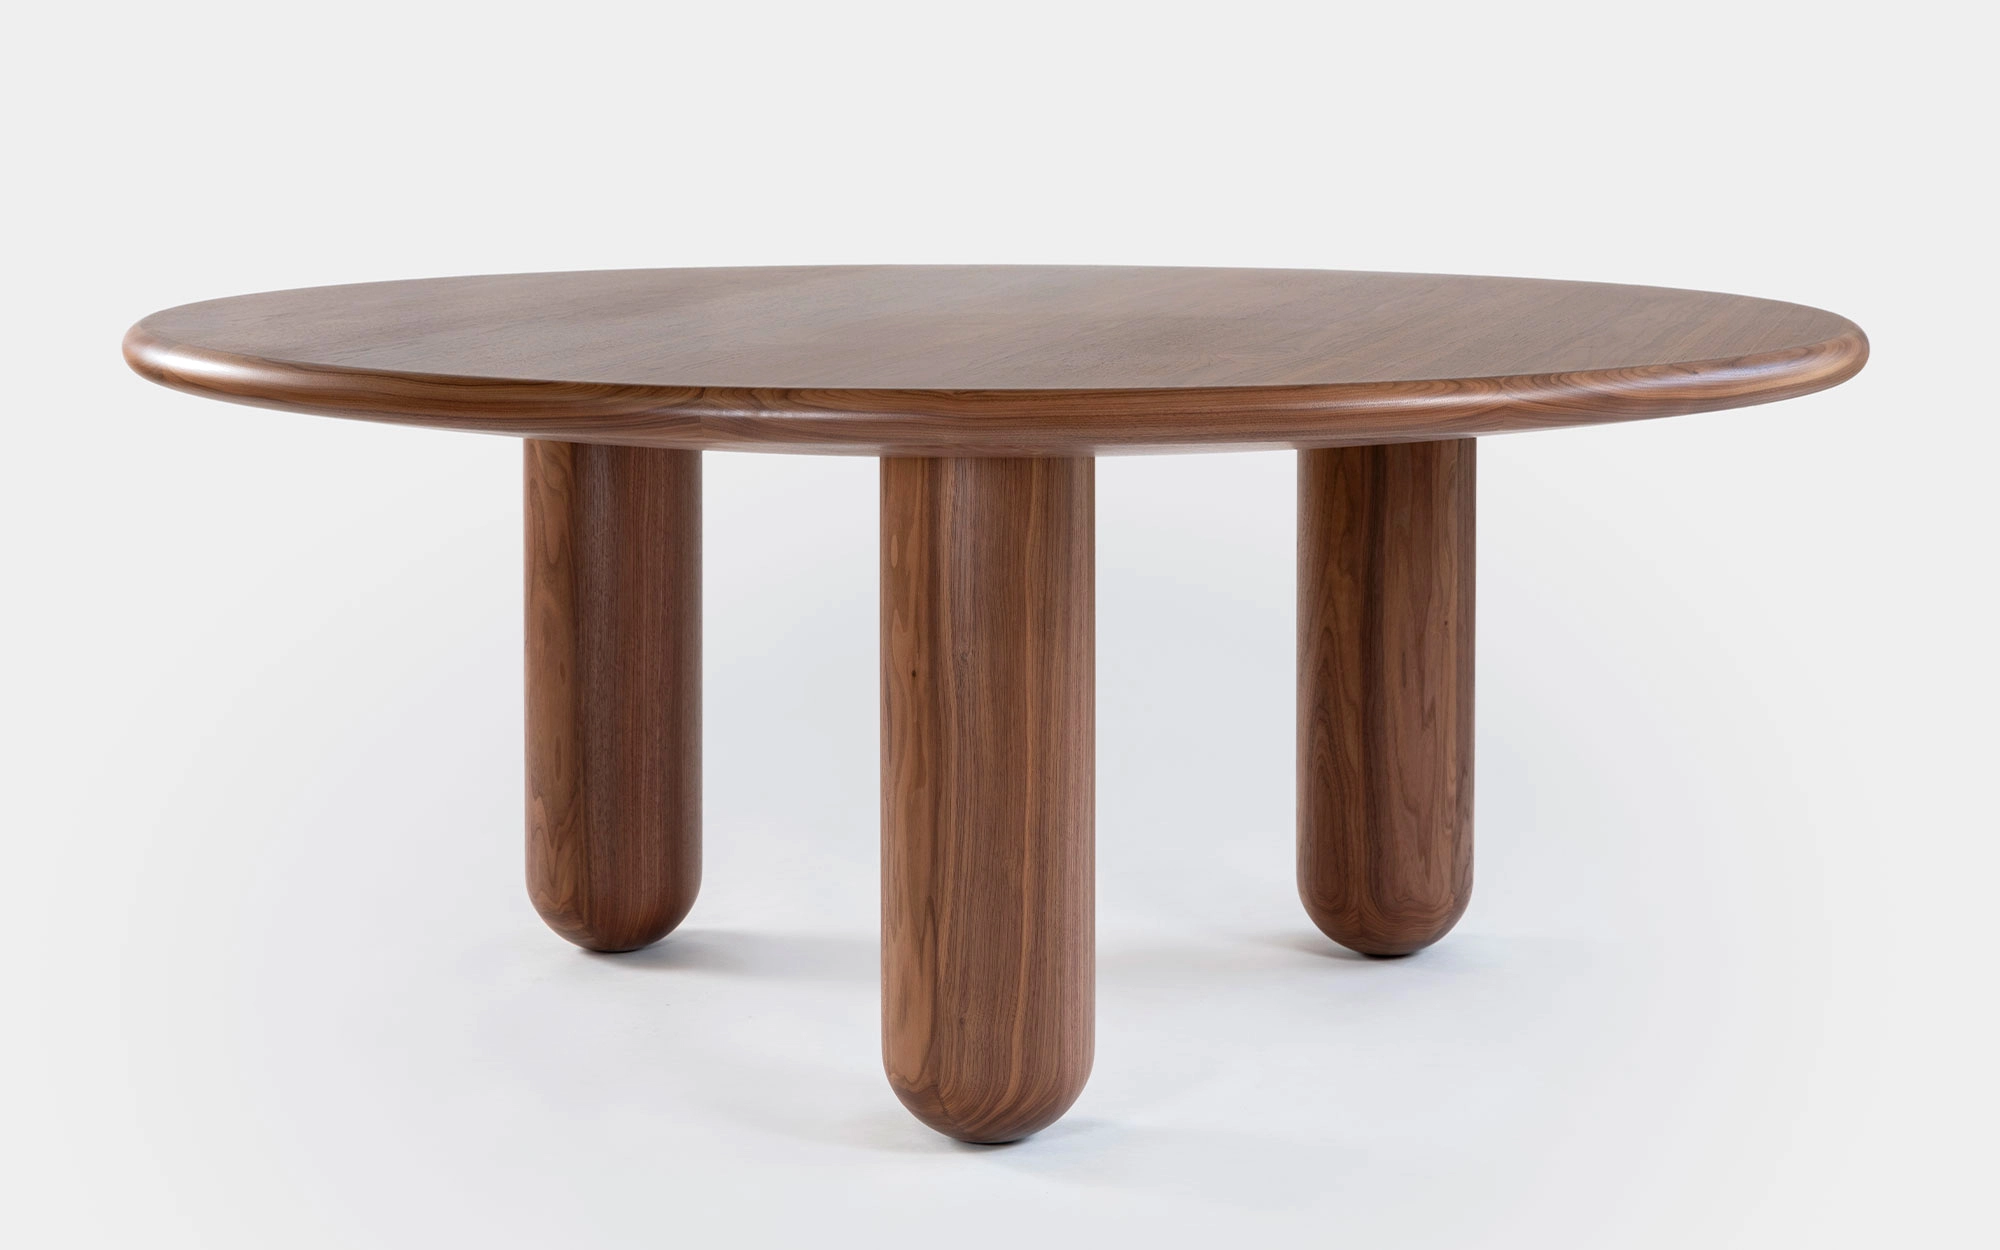 Organism table - Jaime Hayon - Bench - Galerie kreo